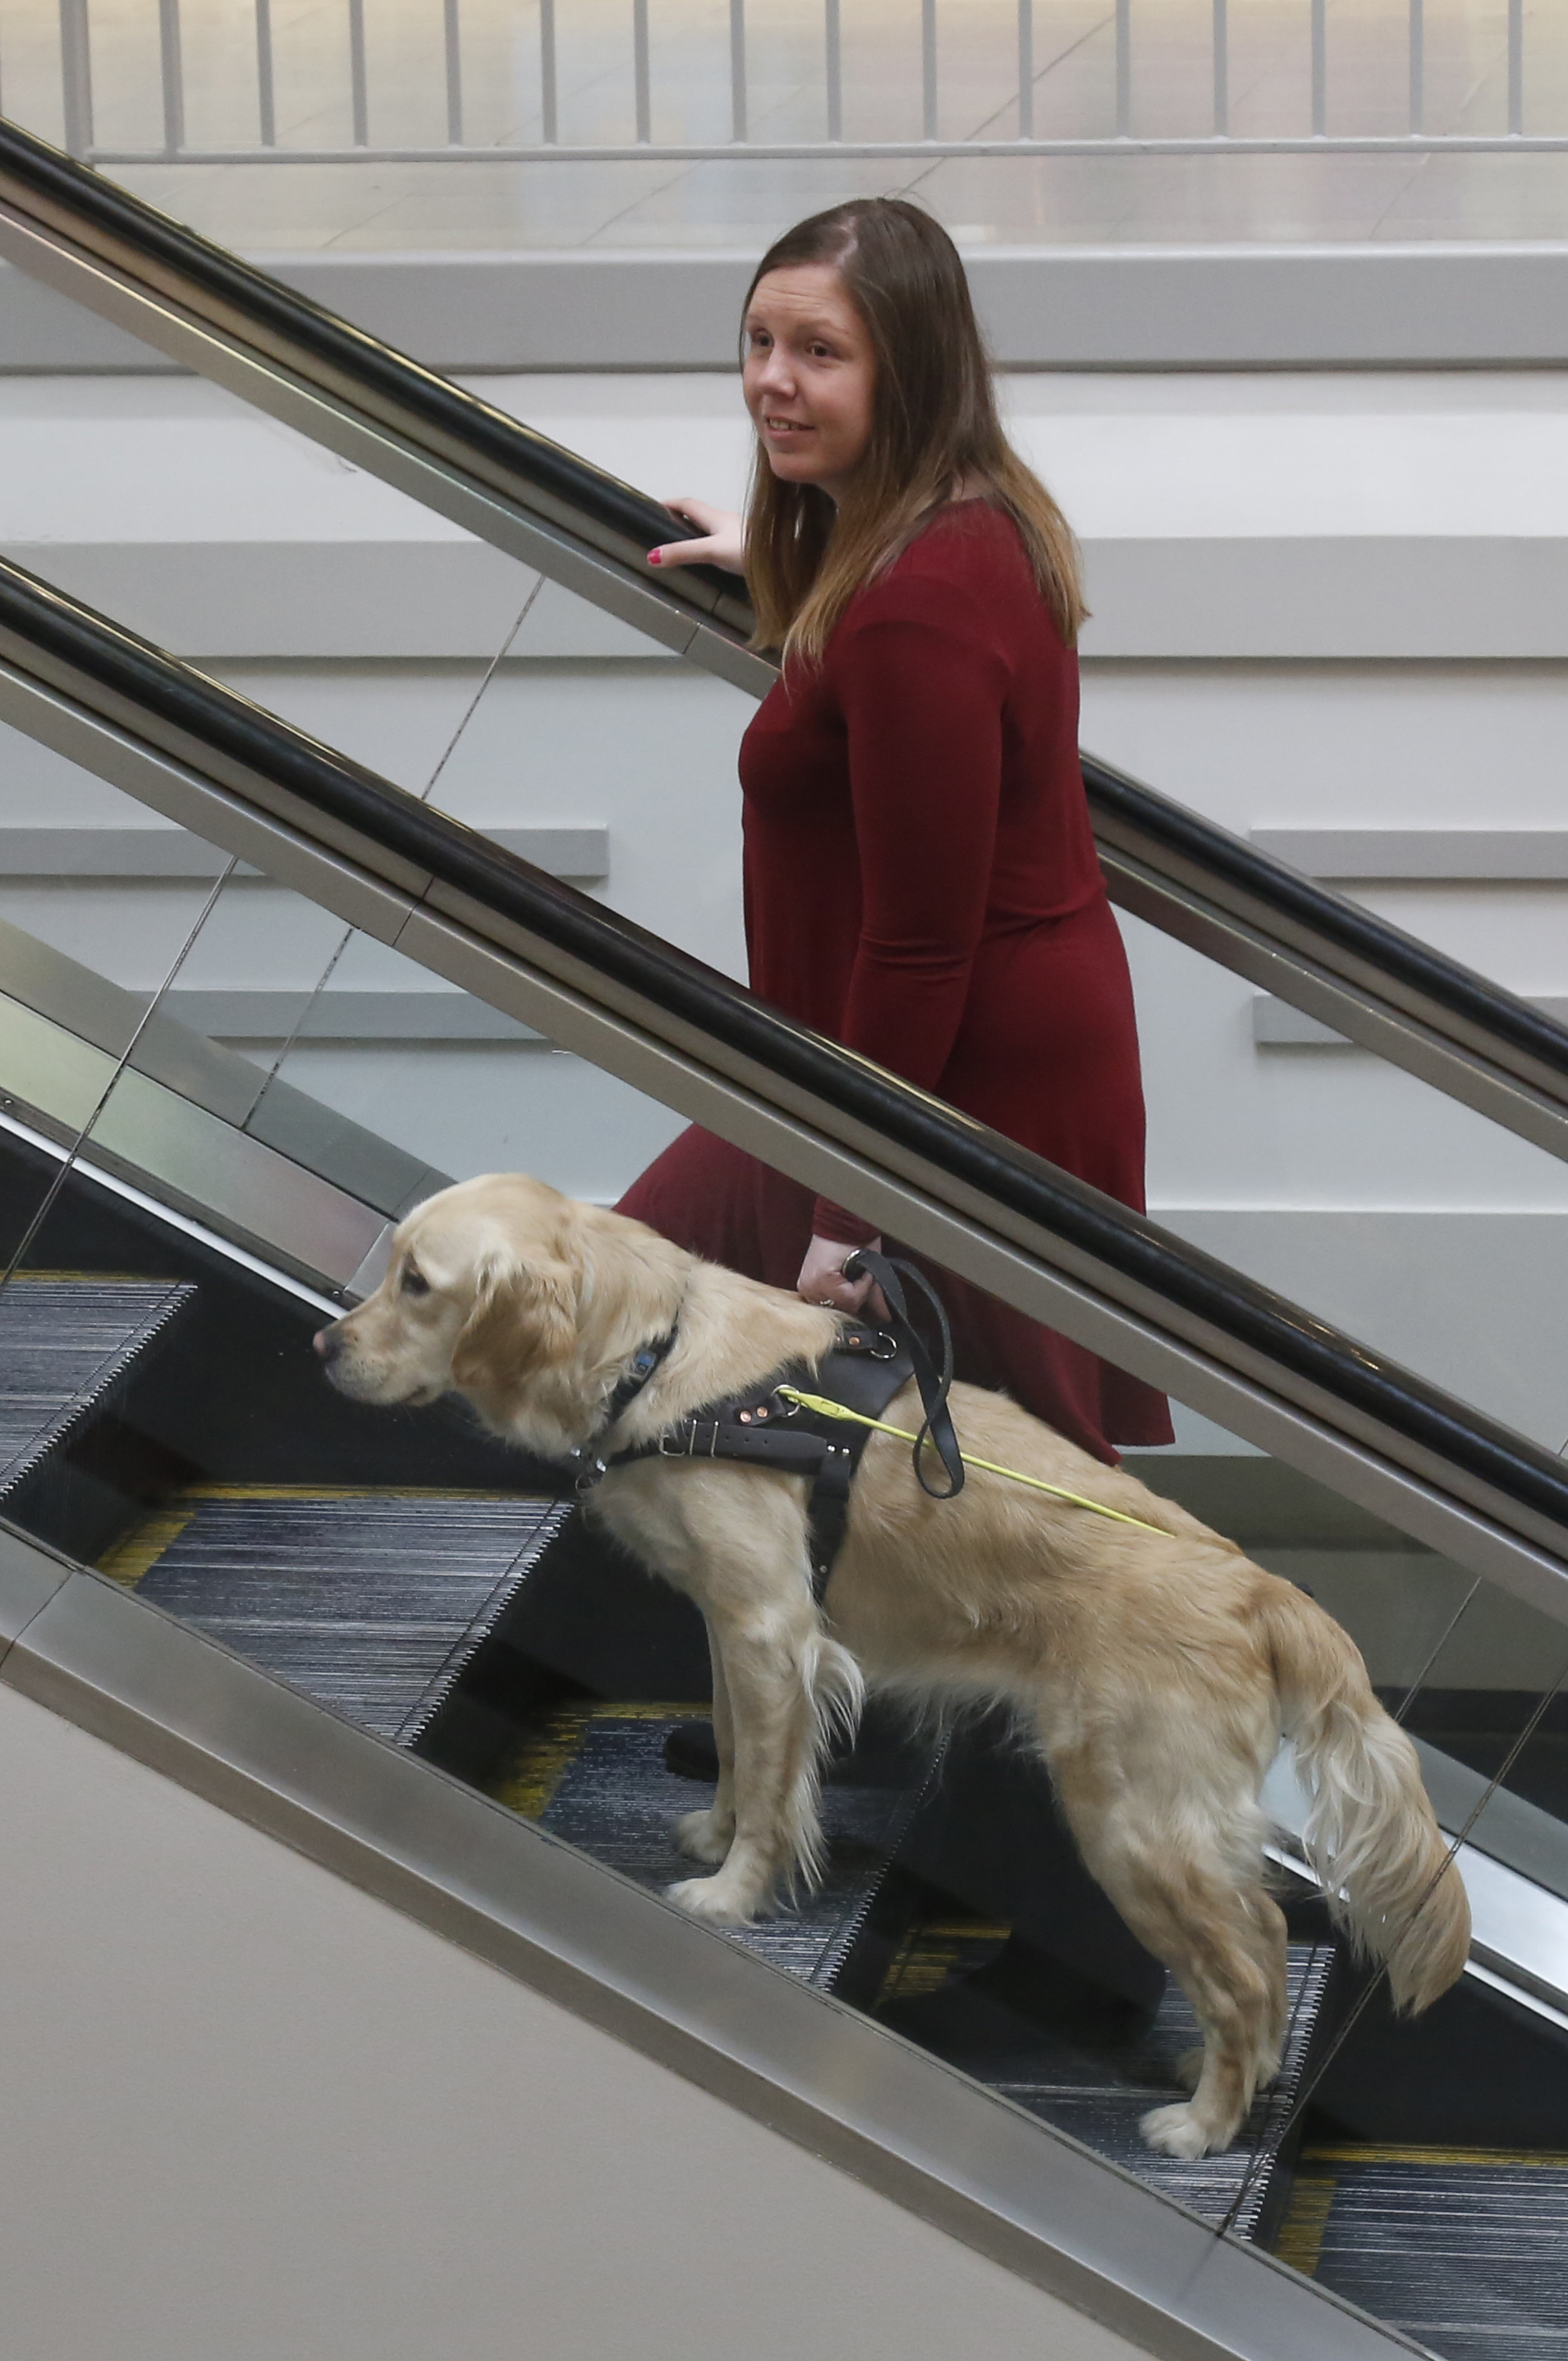 Une femme et son chien-guide montant un escalier roulant dans un centre commercial; le chien-guide est un golden retriever